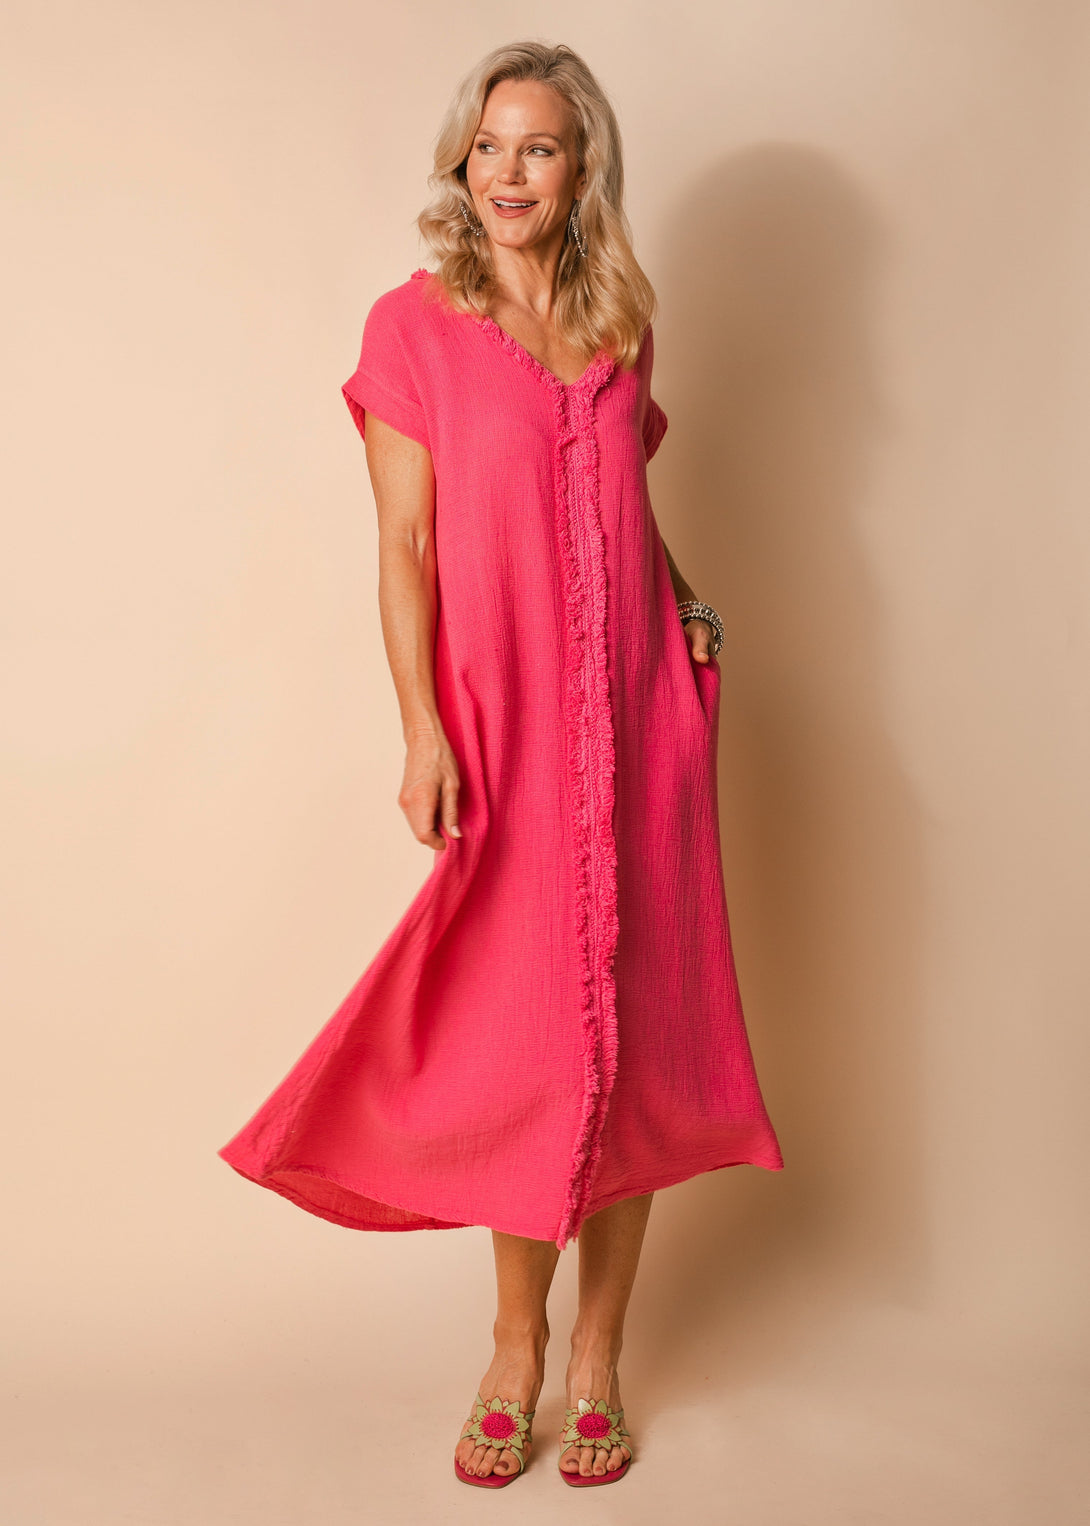 Kaidi Linen Dress in Raspberry Sorbet